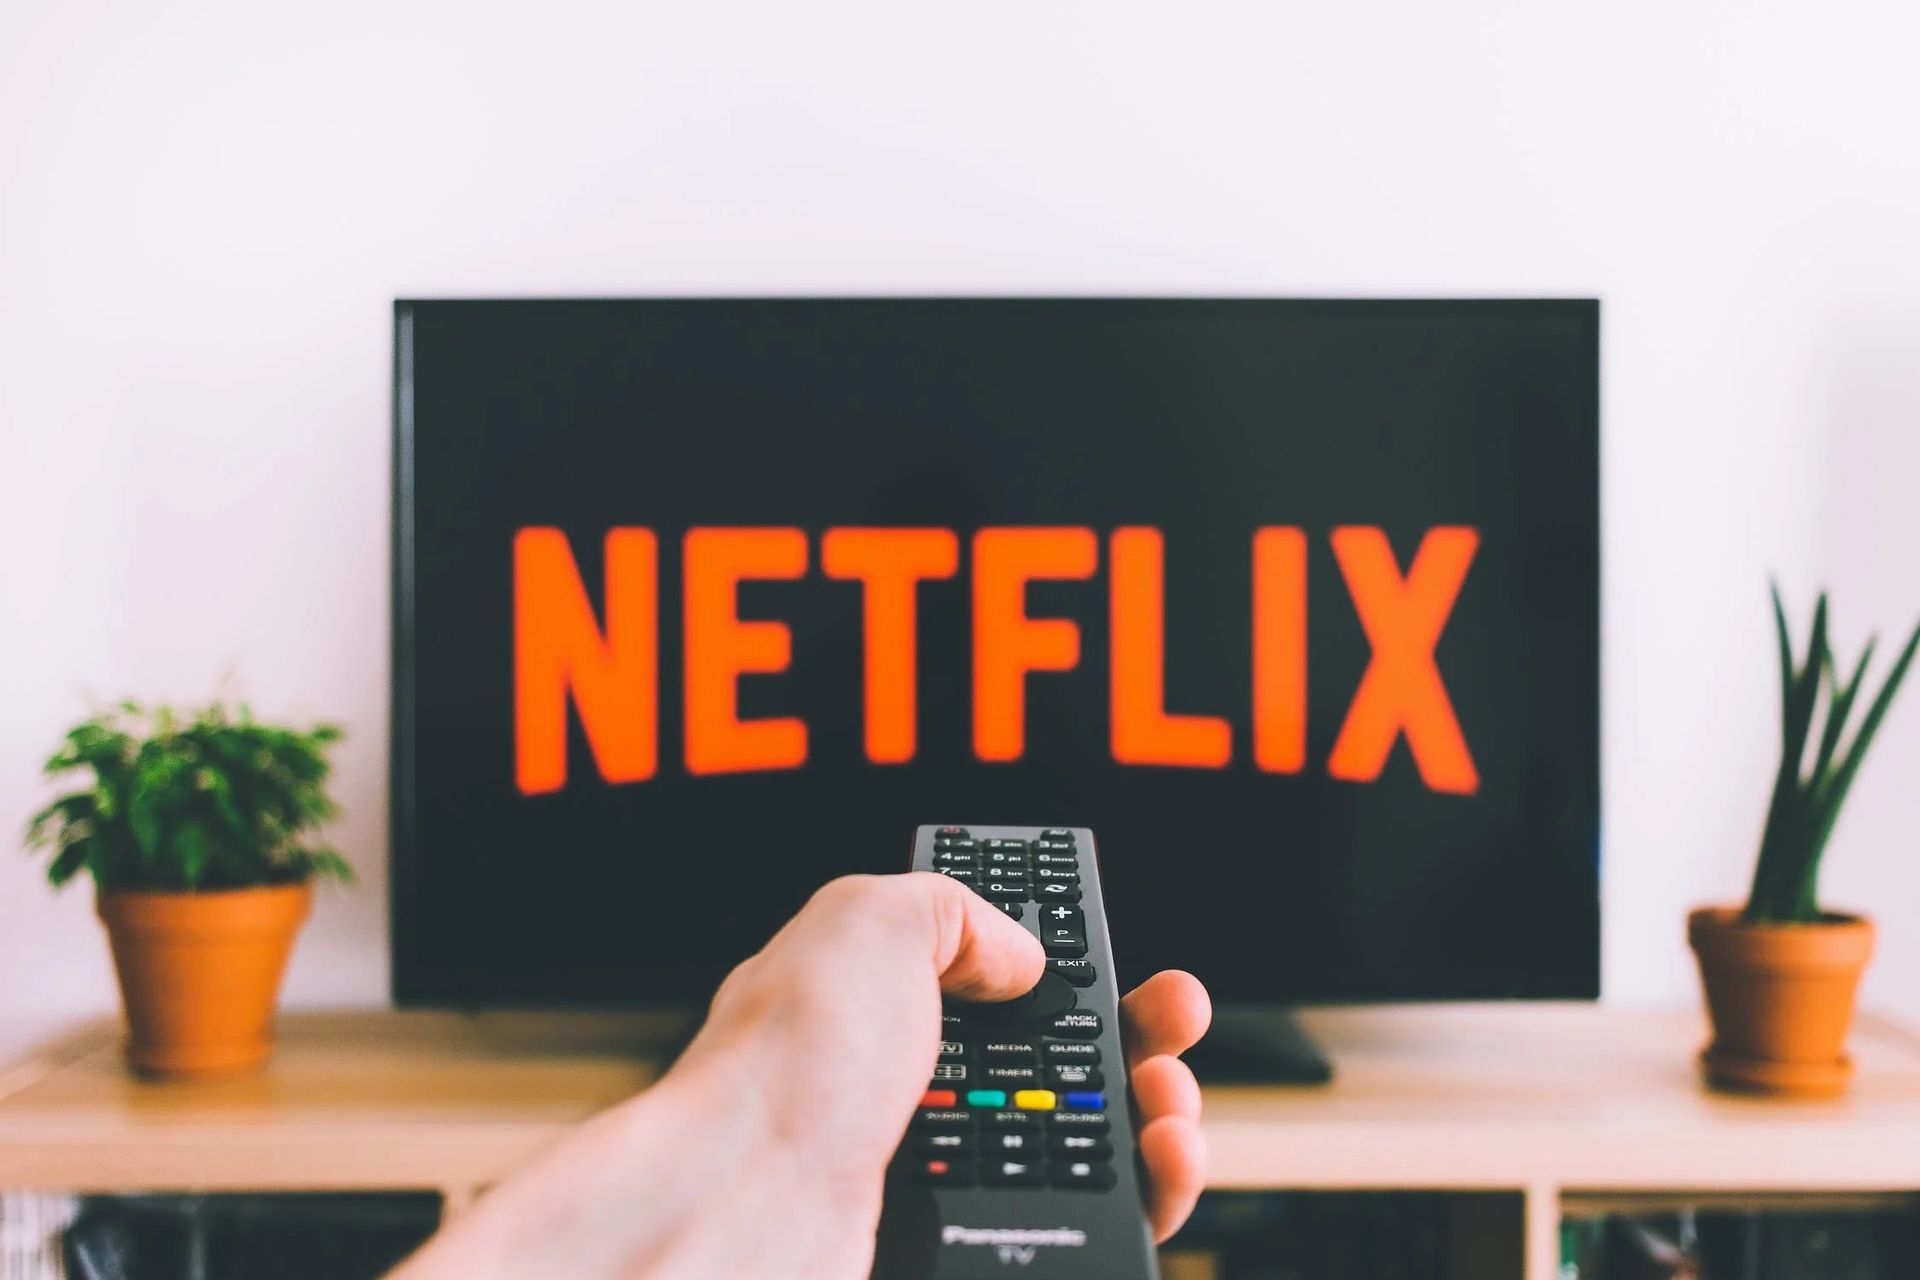 Popularna platforma streamingowa Netflix wkrótce doda do swojej usługi transmisje na żywo.  Netflix może wkrótce stać się kluczową platformą dla artystów stand-upów i innych programów na żywo